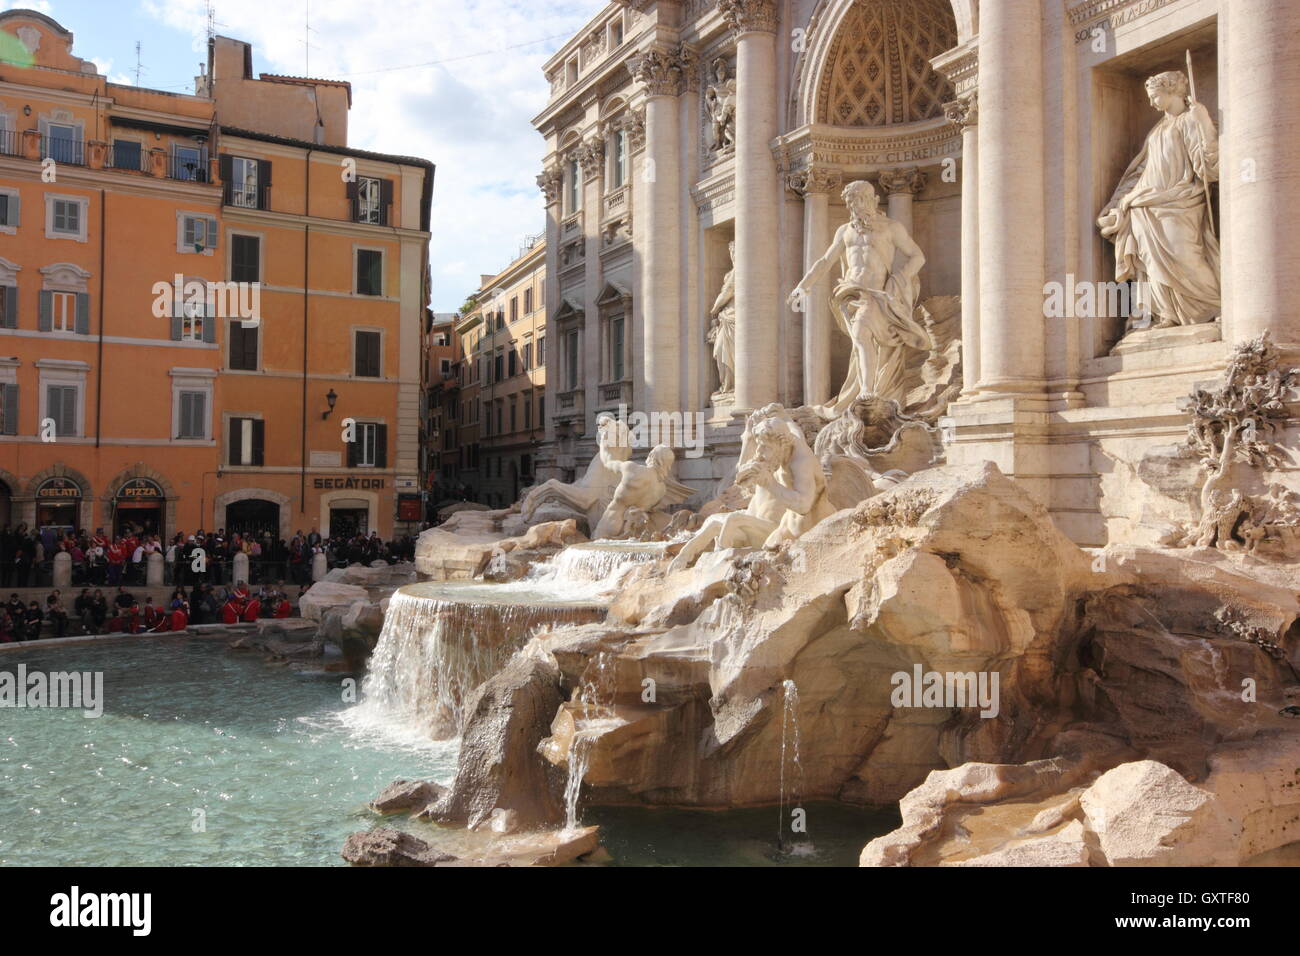 La belle et célèbre Fontana di Trevi, Rome, Italie, vue latérale, vue 3/4 Banque D'Images